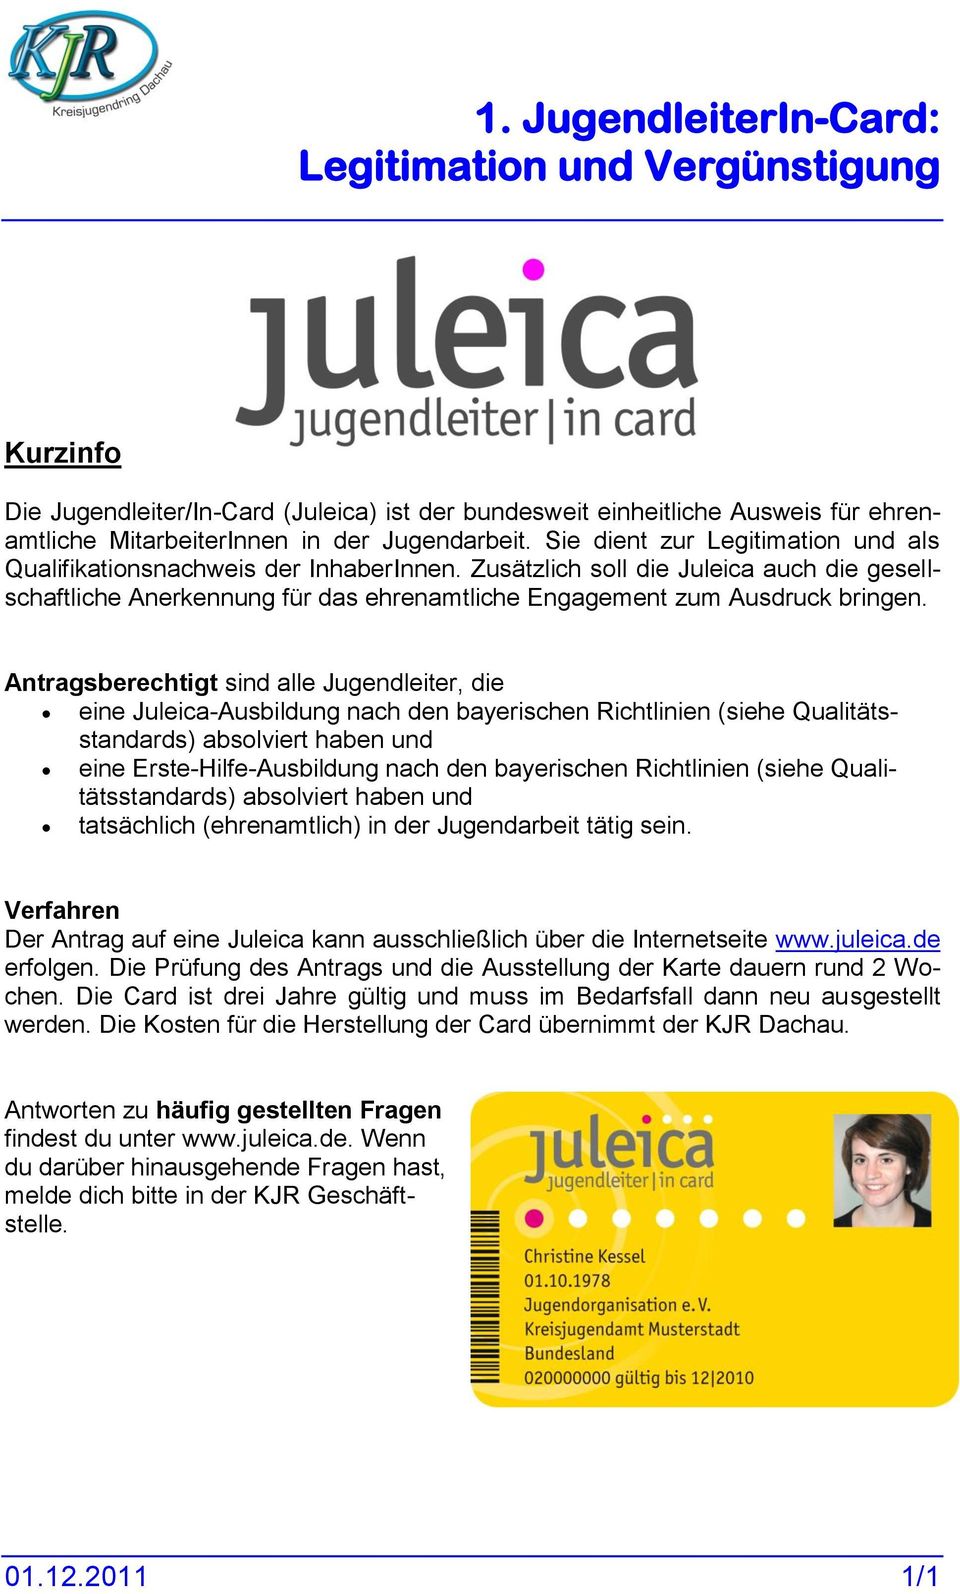 Antragsberechtigt sind alle Jugendleiter, die eine Juleica-Ausbildung nach den bayerischen Richtlinien (siehe Qualitätsstandards) absolviert haben und eine Erste-Hilfe-Ausbildung nach den bayerischen